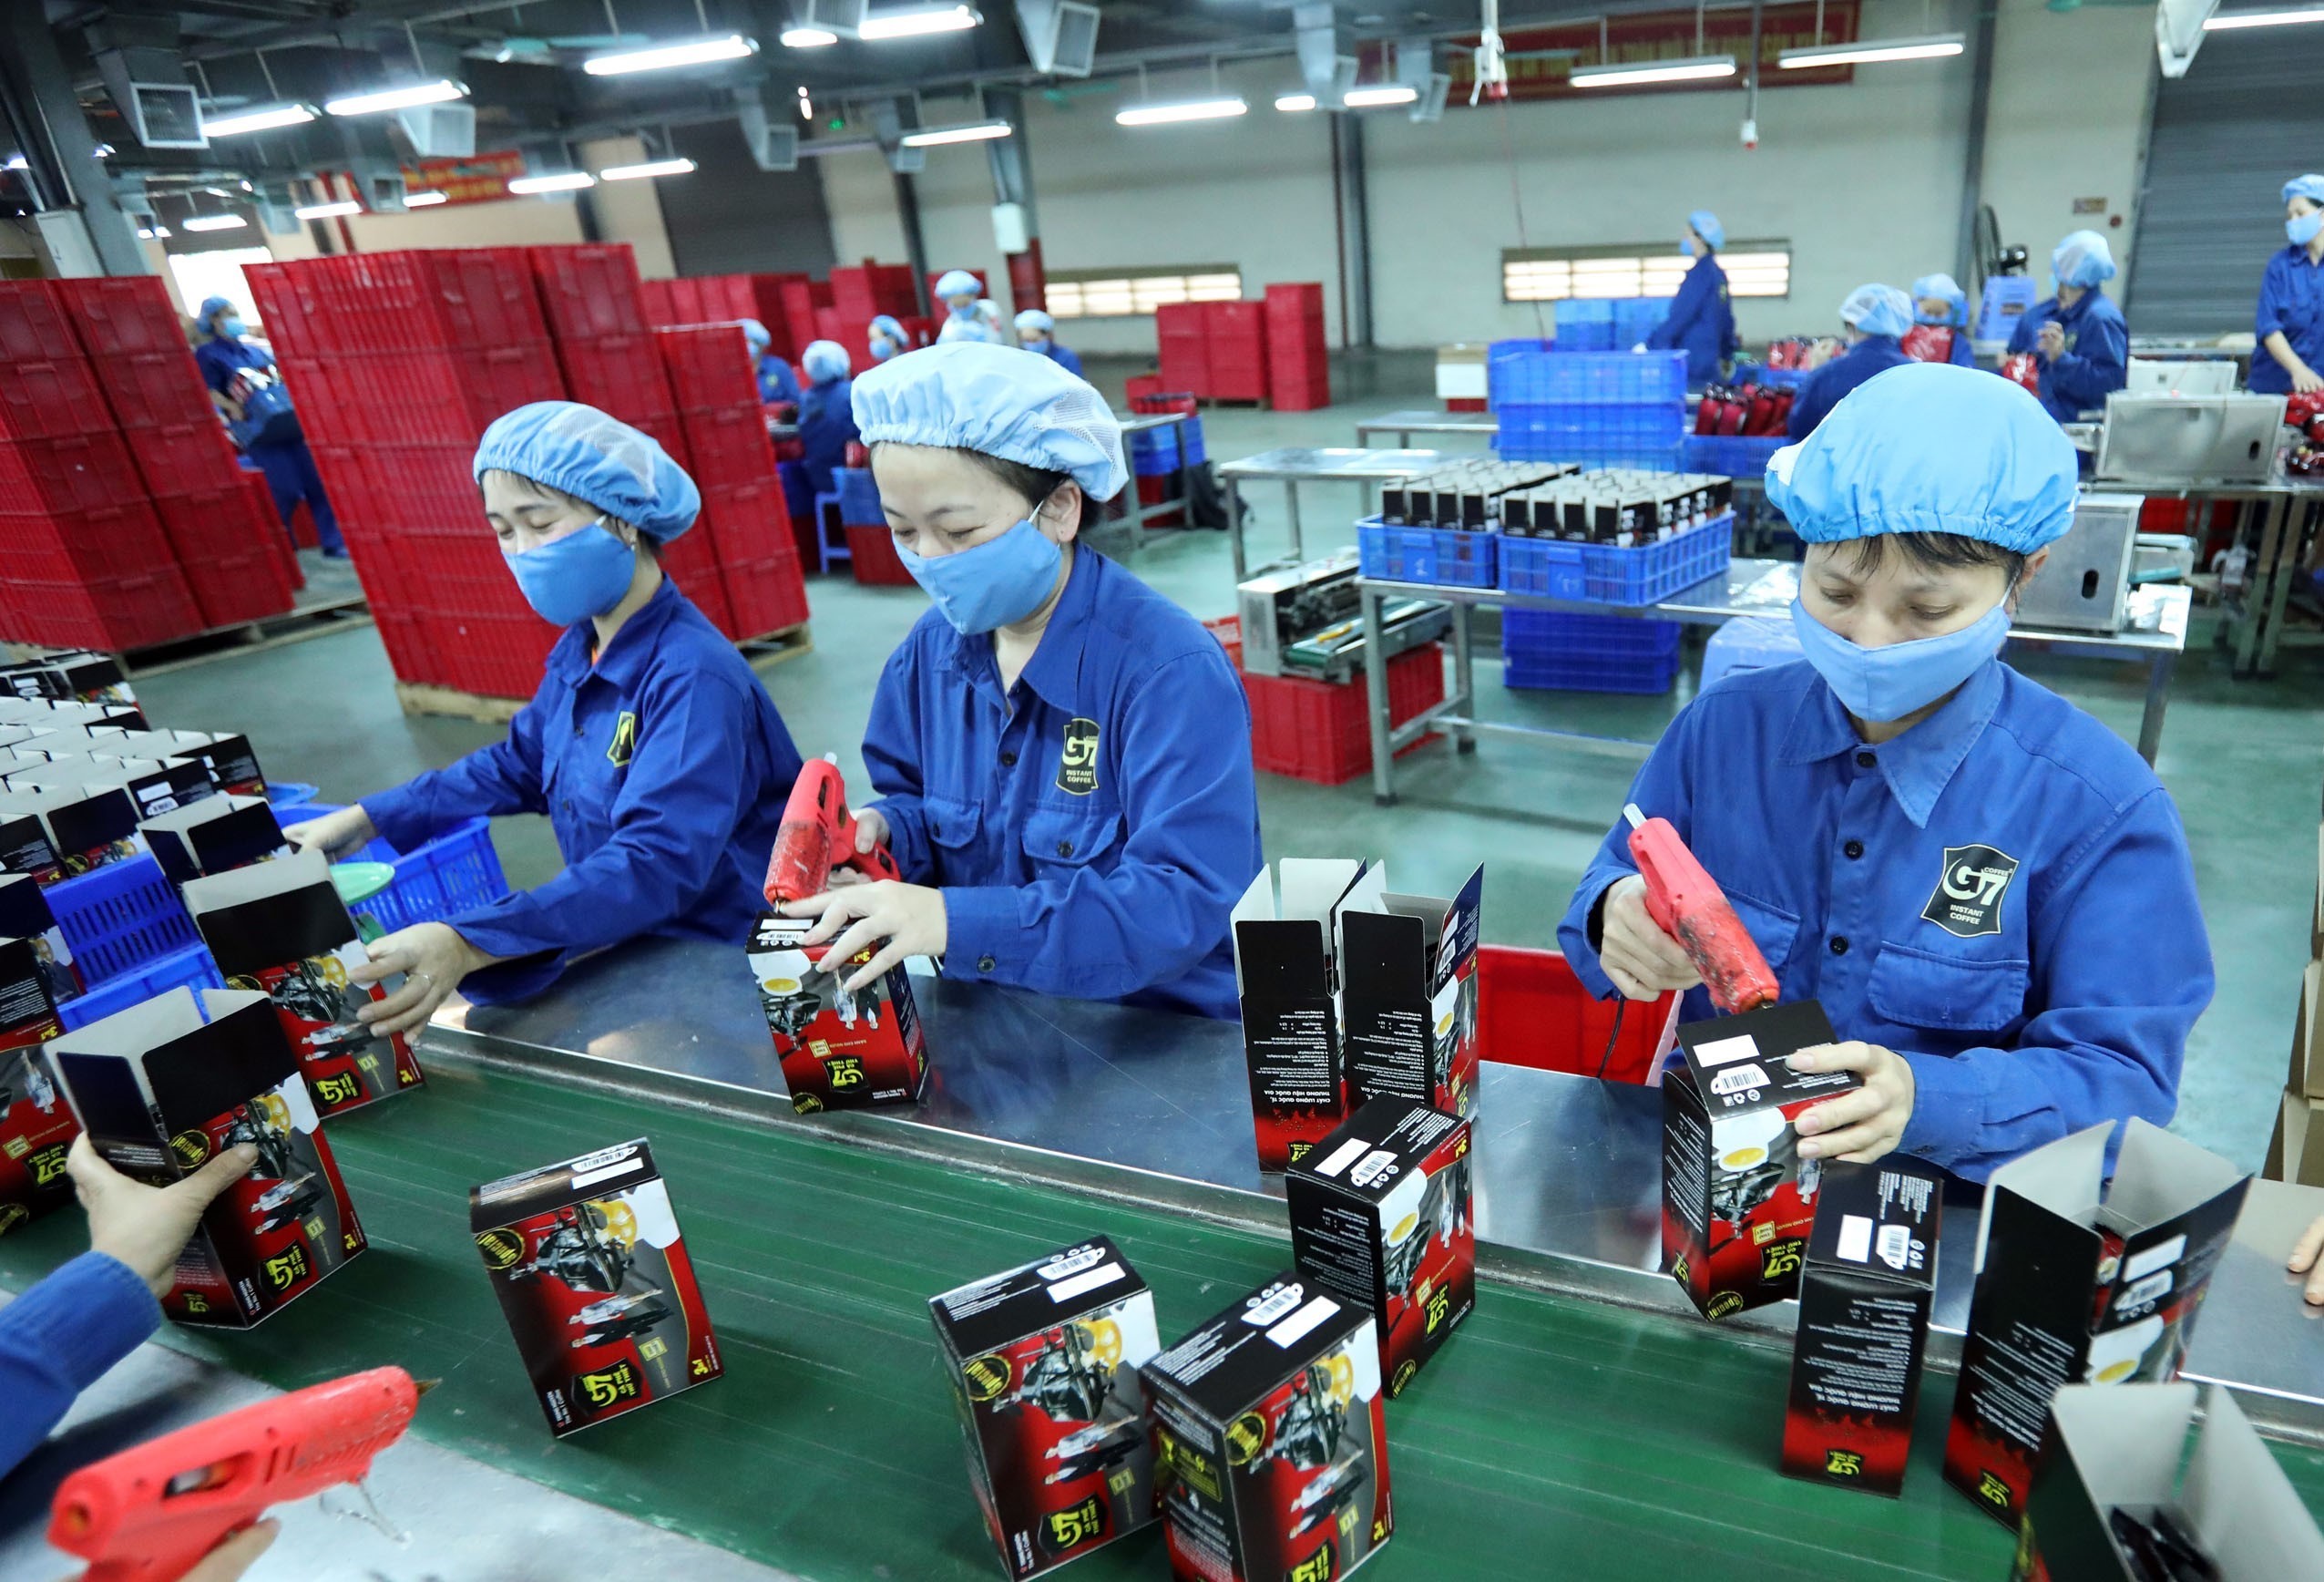 Công ty cổ phần cà phê hòa tan Trung Nguyên tại Bắc Giang hiện đang xuất khẩu sang nhiều nước như Trung Quốc, Nga, Singapore…không bỏ lỡ cơ hội đã có kế hoạch đầu tư thêm nhiều dây chuyền mới trong đầu năm 2021. (Ảnh: Danh Lam/ TTXVN)